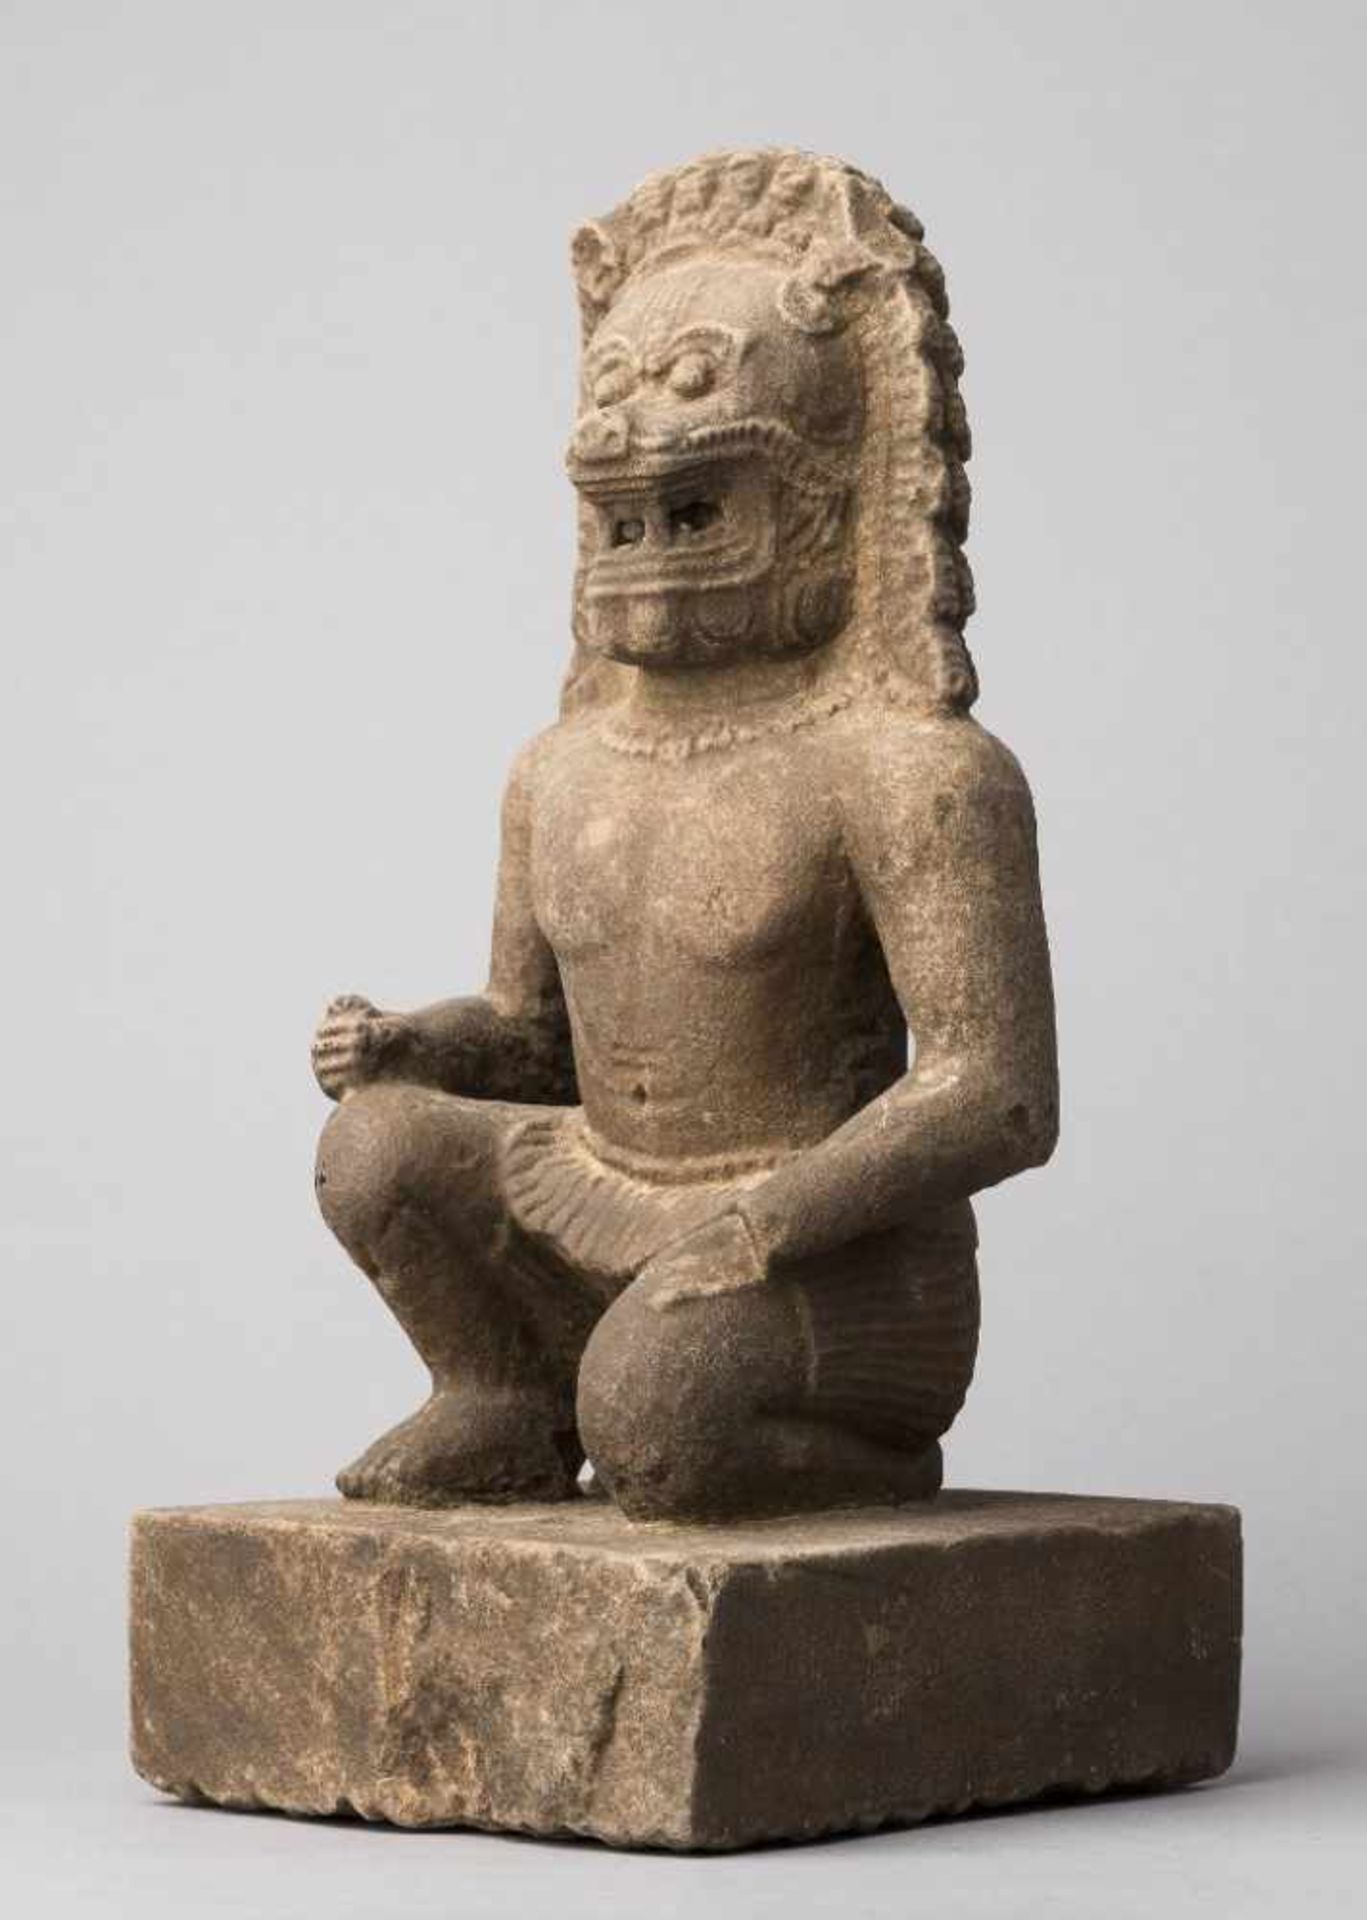 Wächterfigur mit Löwenhaupt, mit einem Bein auf quadratischem Plinthensockel kniend. Stein, - Bild 2 aus 2